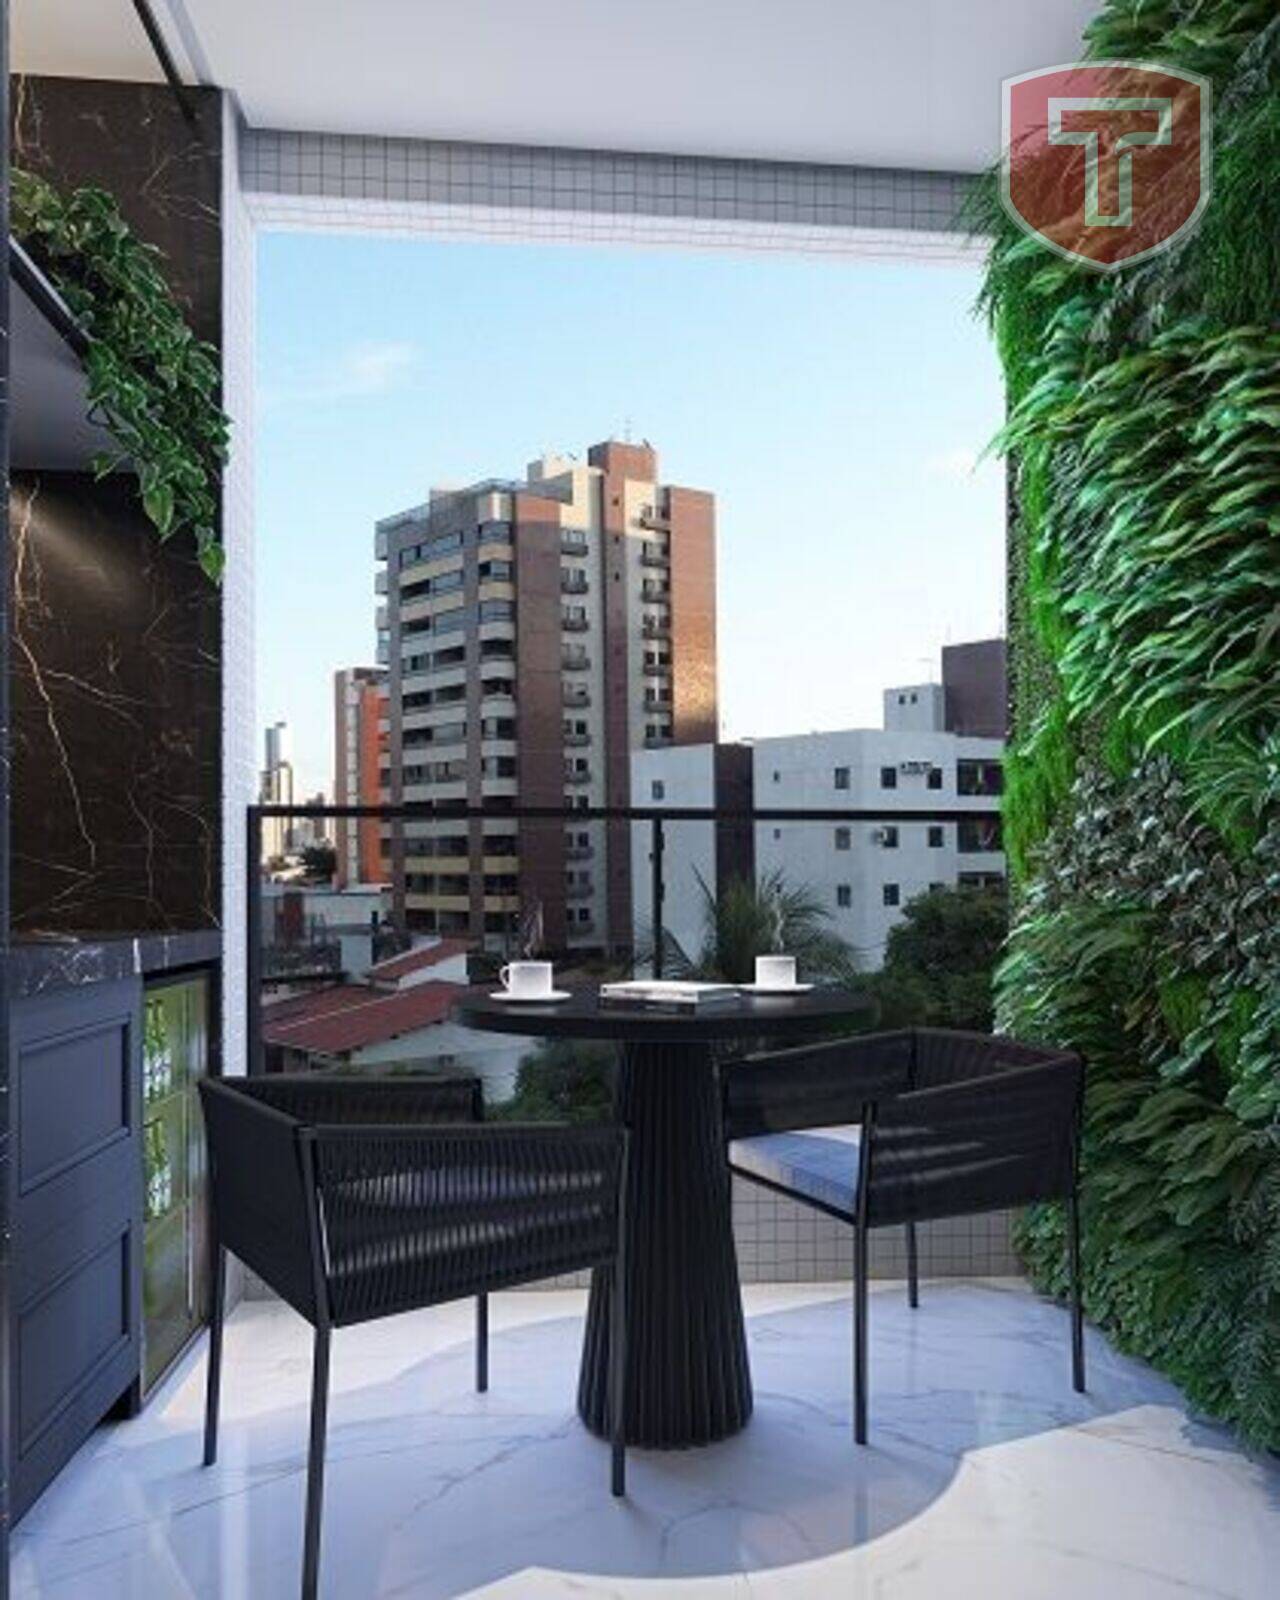 Magnifique Ewerton Webber Azevedo - Apartamento com 2 quartos à venda - Jardim Oceania, João Pessoa/PB